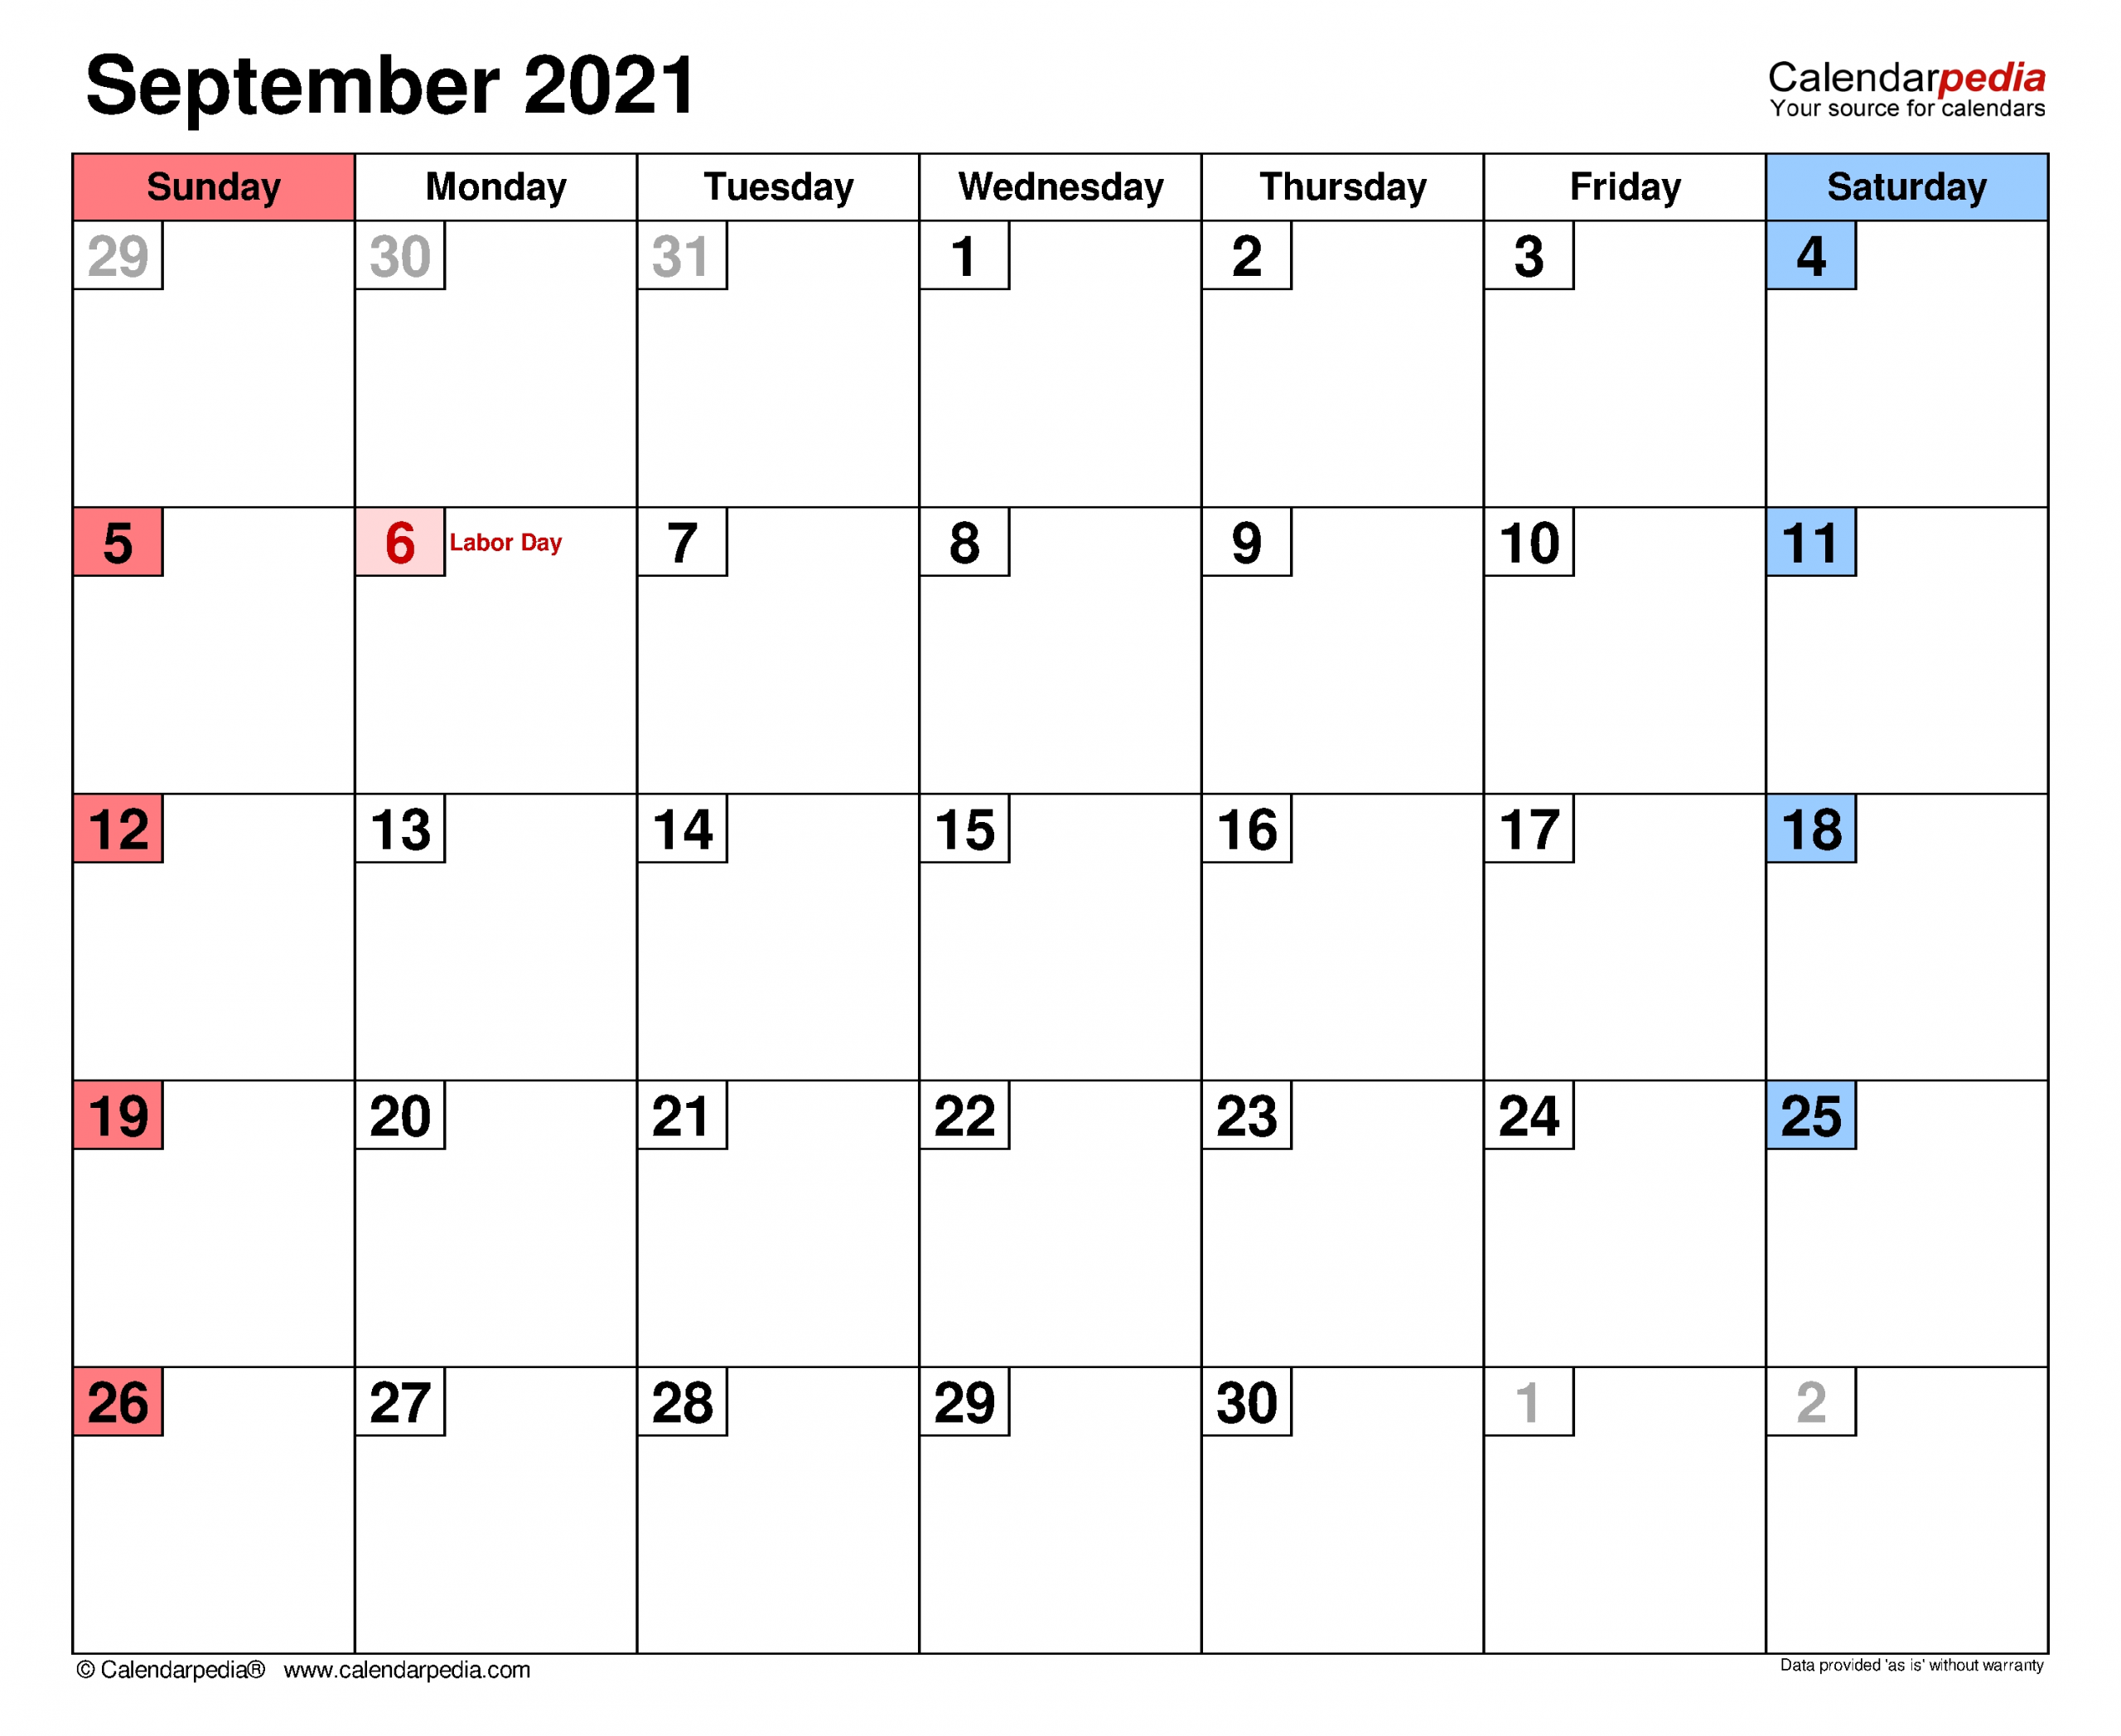 September 2021 Calendar | Templates For Word, Excel And Pdf September 2021 Calendar Download